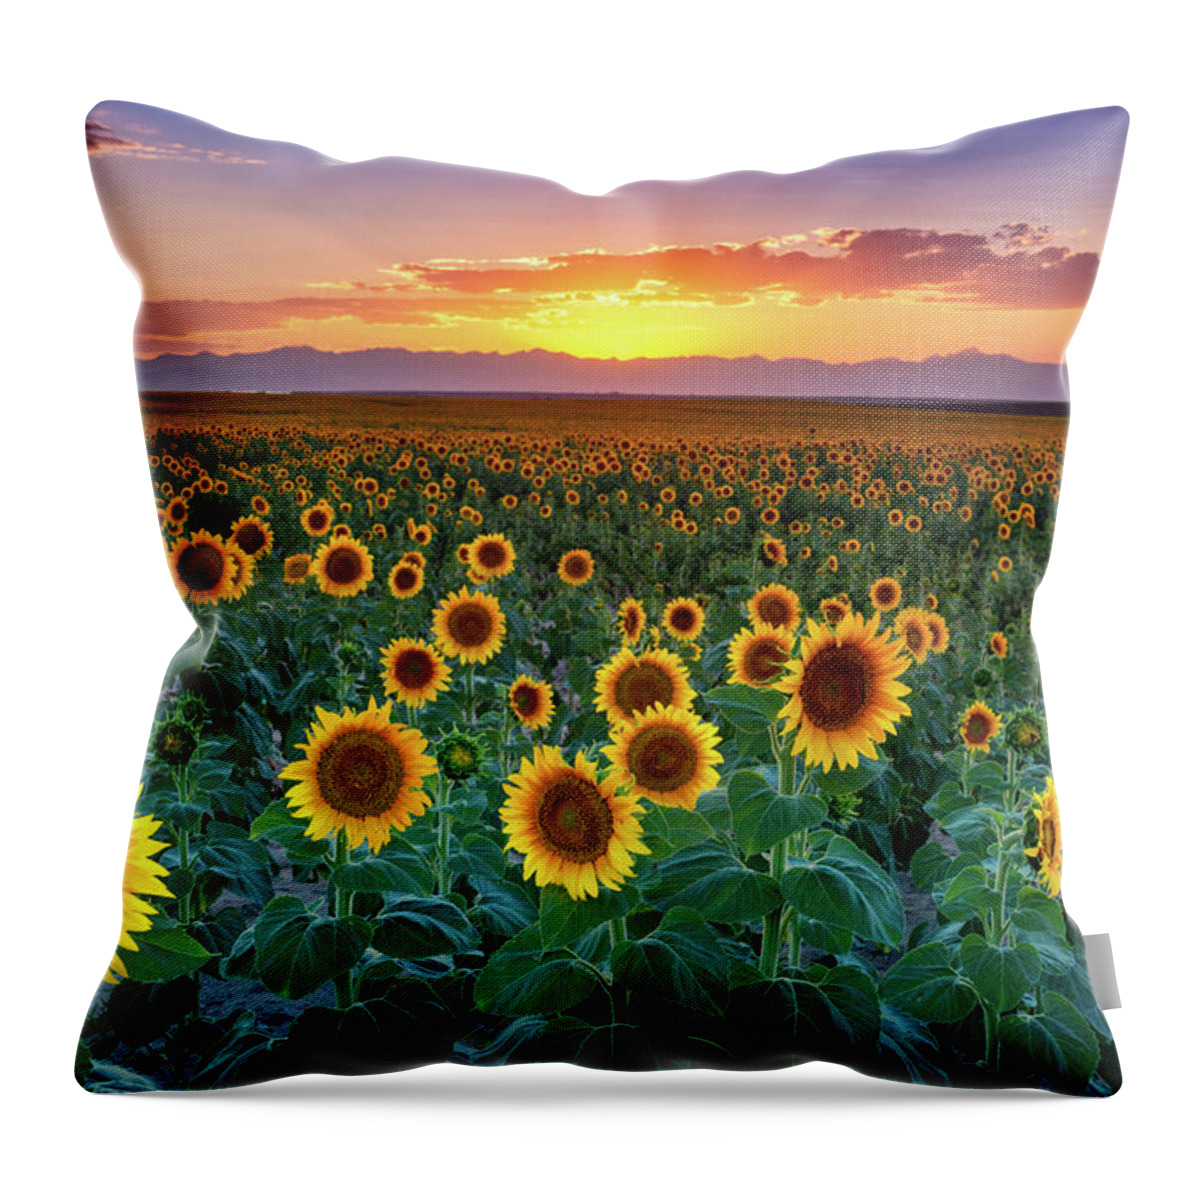 Colorado Throw Pillow featuring the photograph Summer Romance by John De Bord